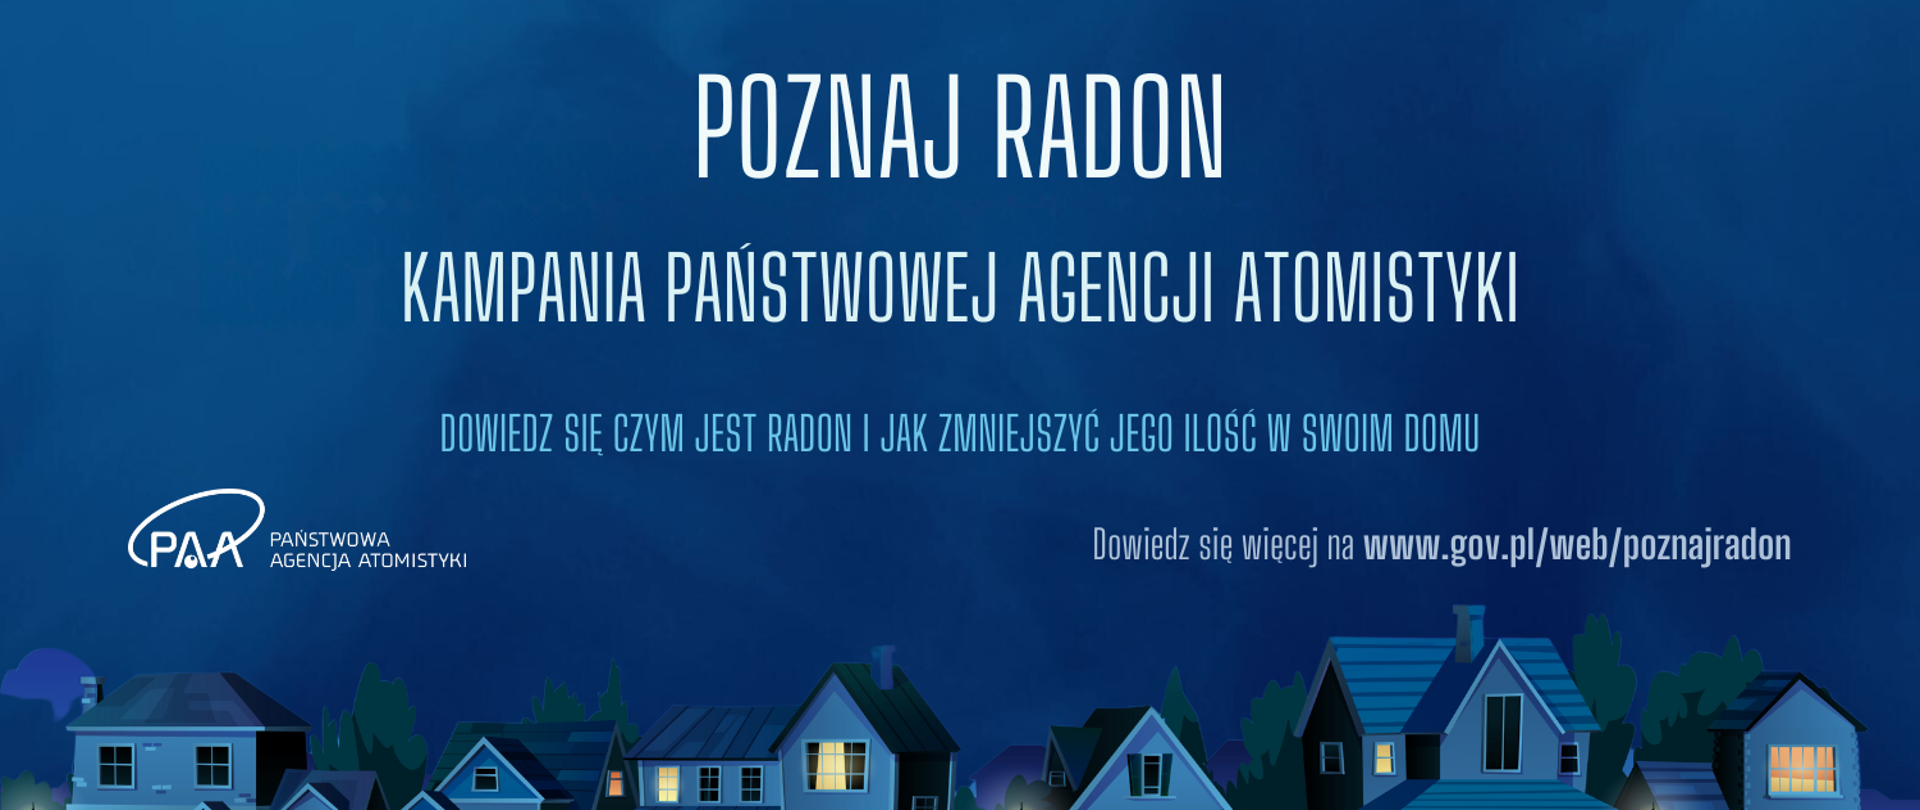 Grafika zatytułowana Kampania Poznaj radon, w tle osiedle zabudowa jednorodzinna nocą. Po środku hasło: Dowiedz się czym jest radon i jak zmniejszyć jego ilość w swoim domu.